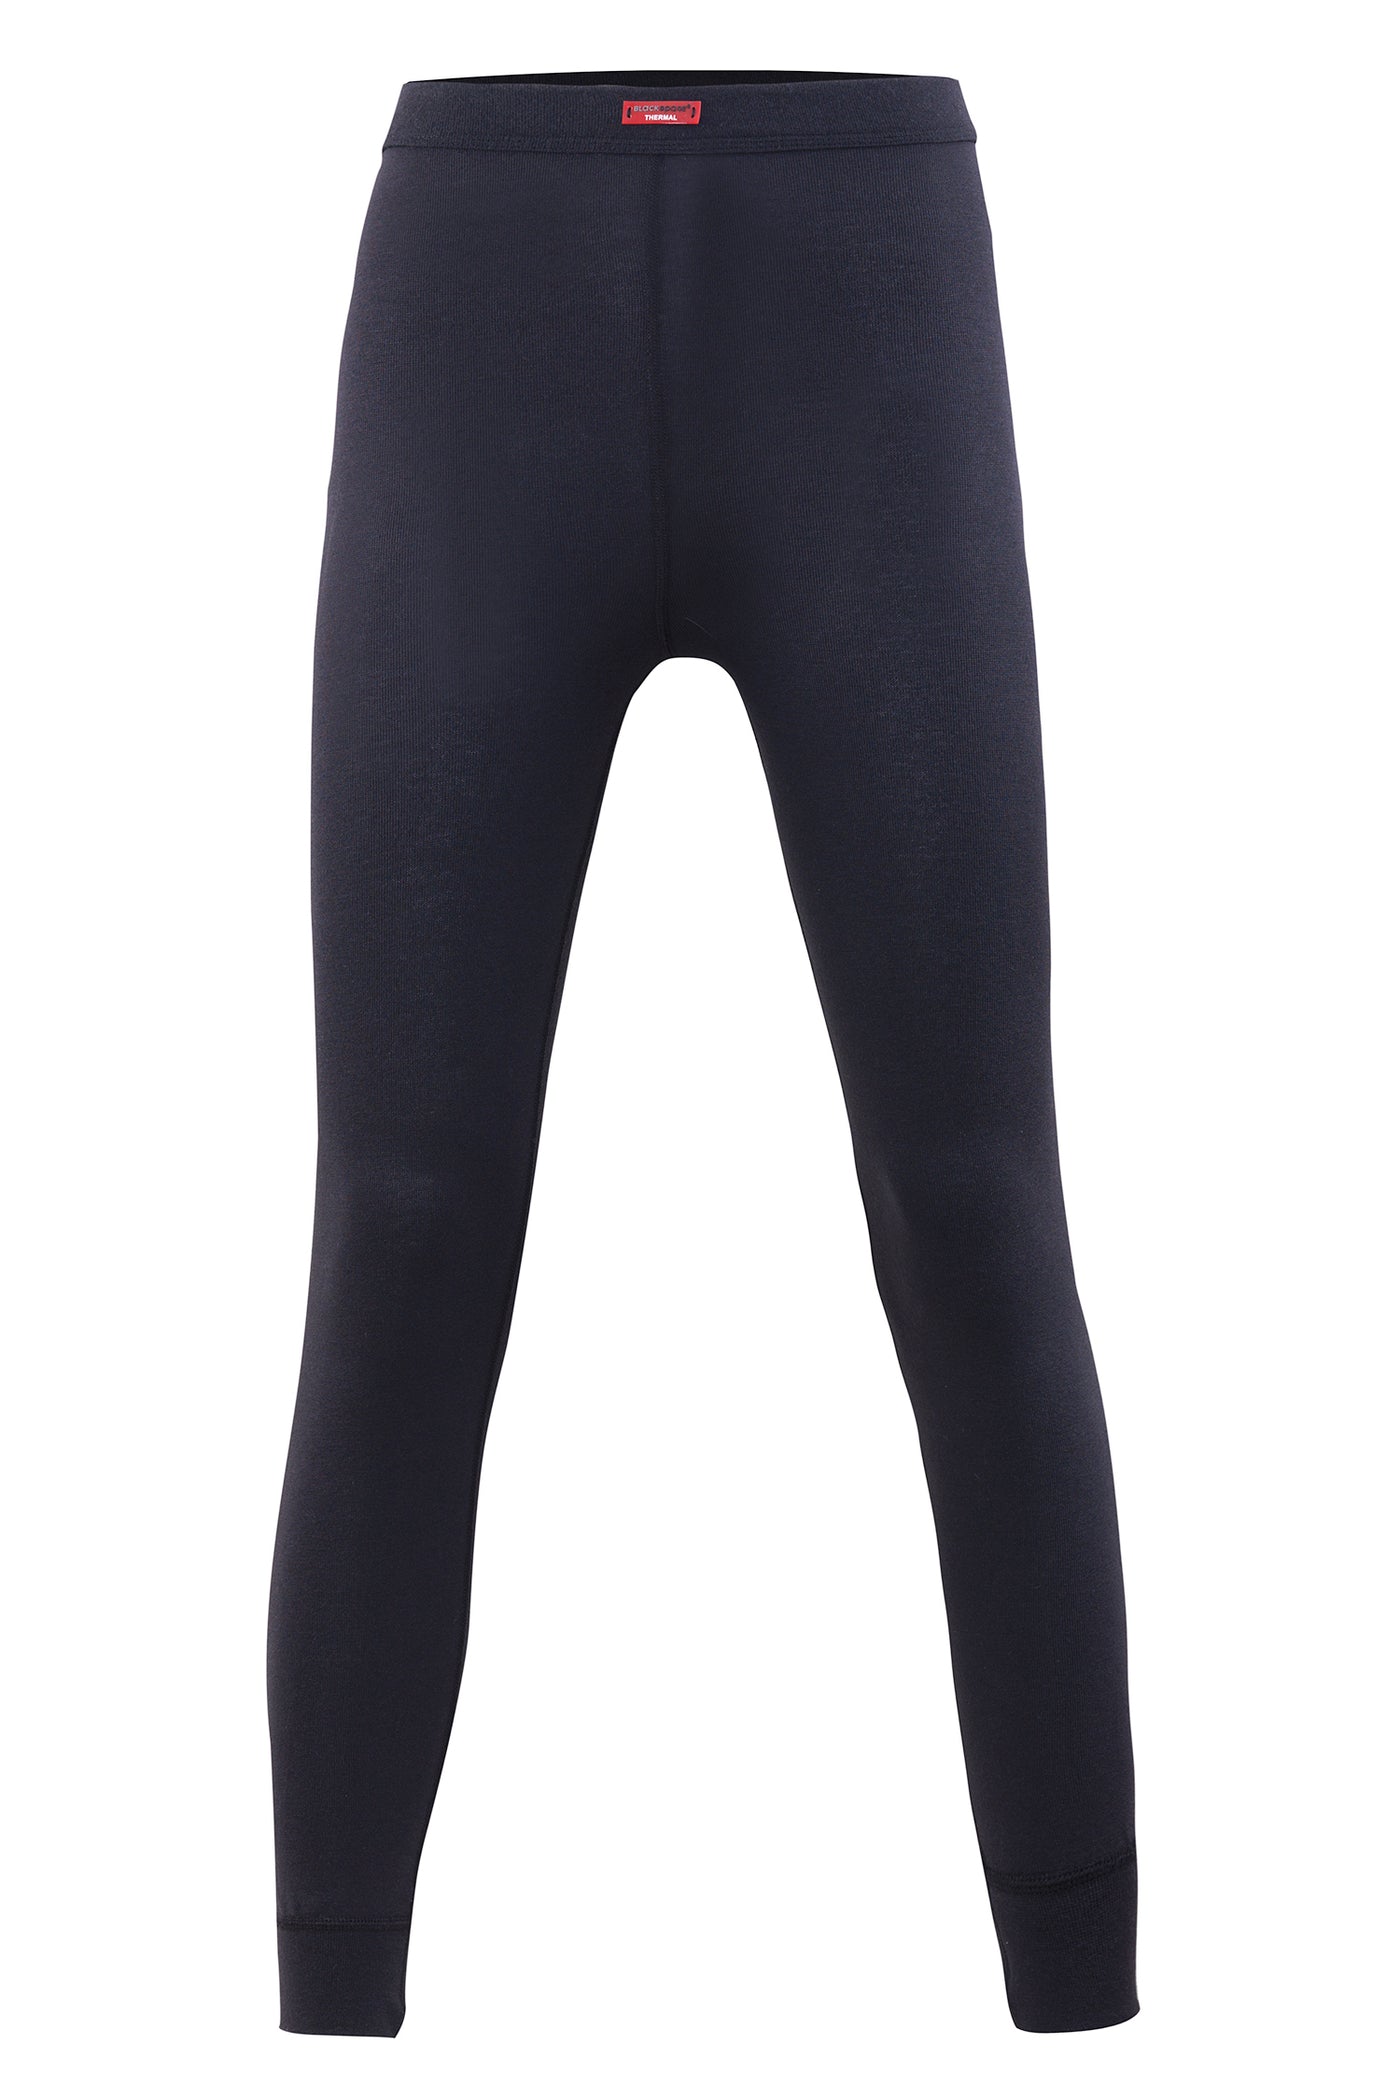 blackspade-Ladies' thermal pant-1264, level-2-underwear-black